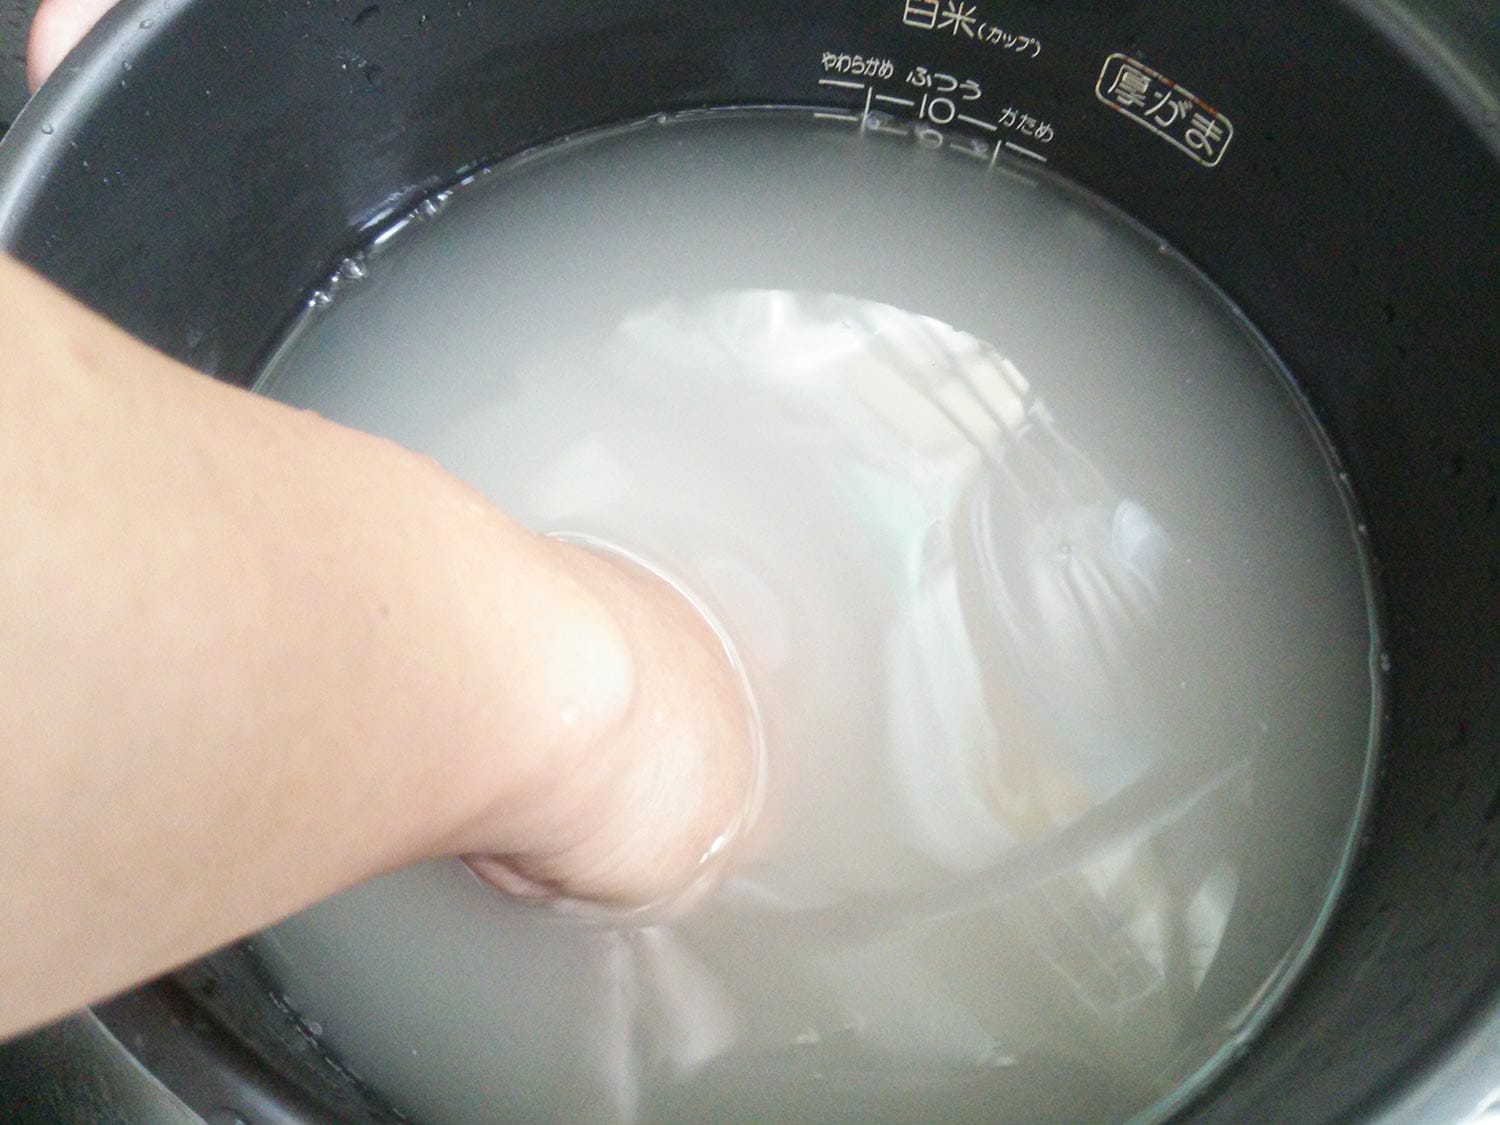 Washing rice